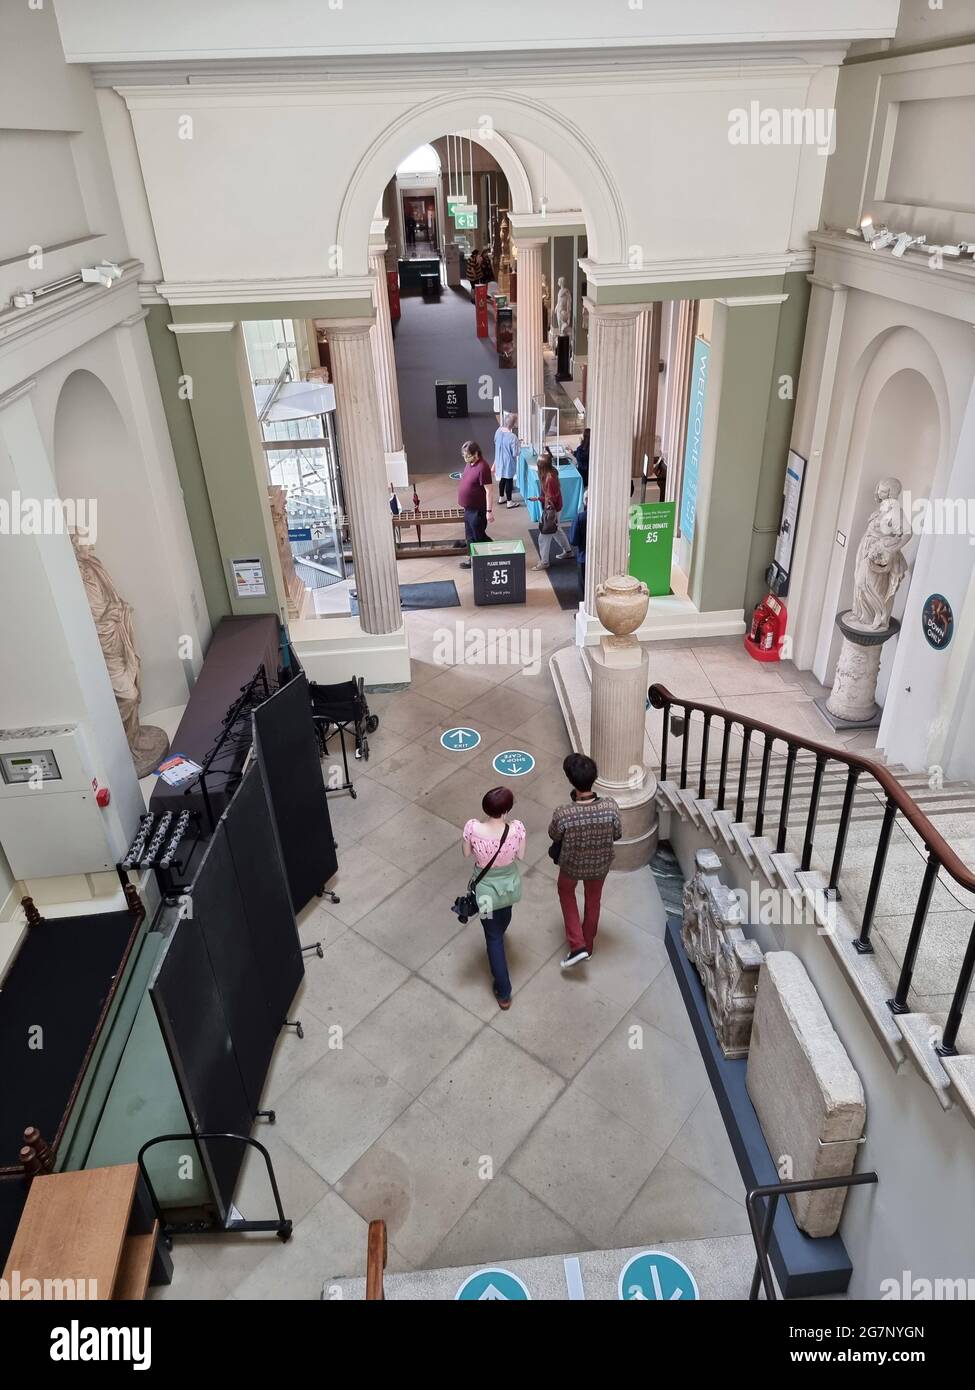 Besucher, die durch die Lobby des Ashmolean Museums in Oxford, England, fahren. Das Ashmolean ist das 1683 gegründete Kunst- und Archäologiemuseum der Universität Oxford. Die weltberühmten Sammlungen reichen von ägyptischen Mumien bis hin zu zeitgenössischer Kunst und erzählen menschliche Geschichten über Kulturen und über die Zeit hinweg. Vereinigtes Königreich. Stockfoto